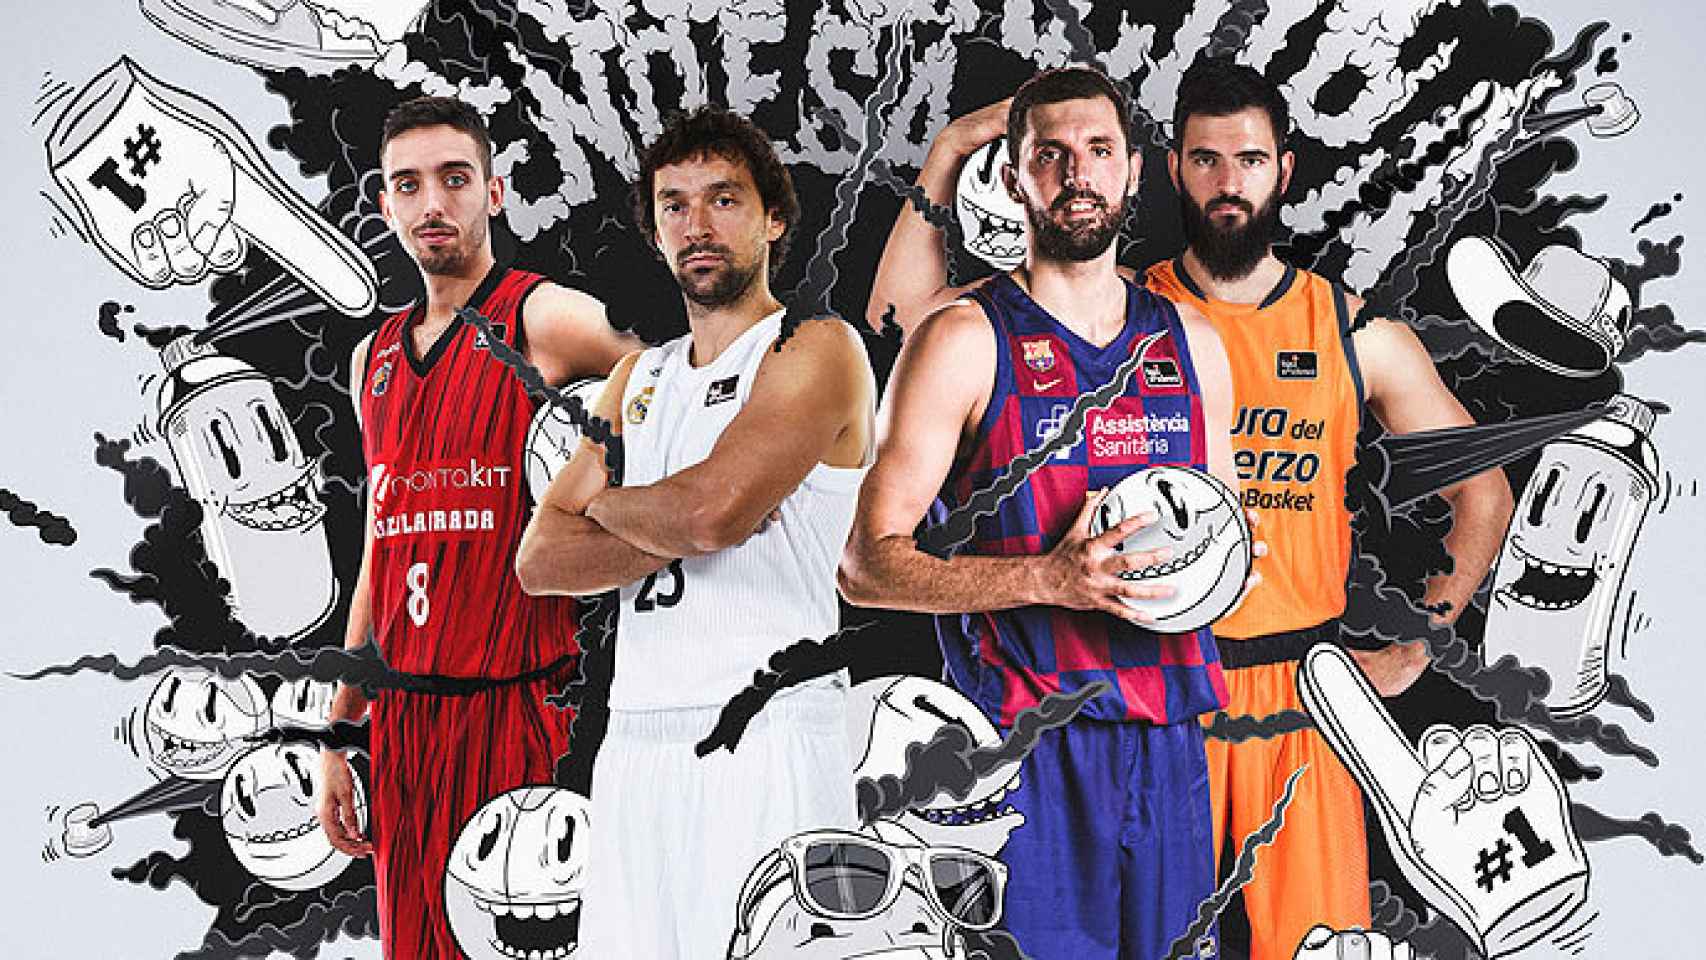 Confirmados los horarios para la Supercopa Endesa 2019 de baloncesto